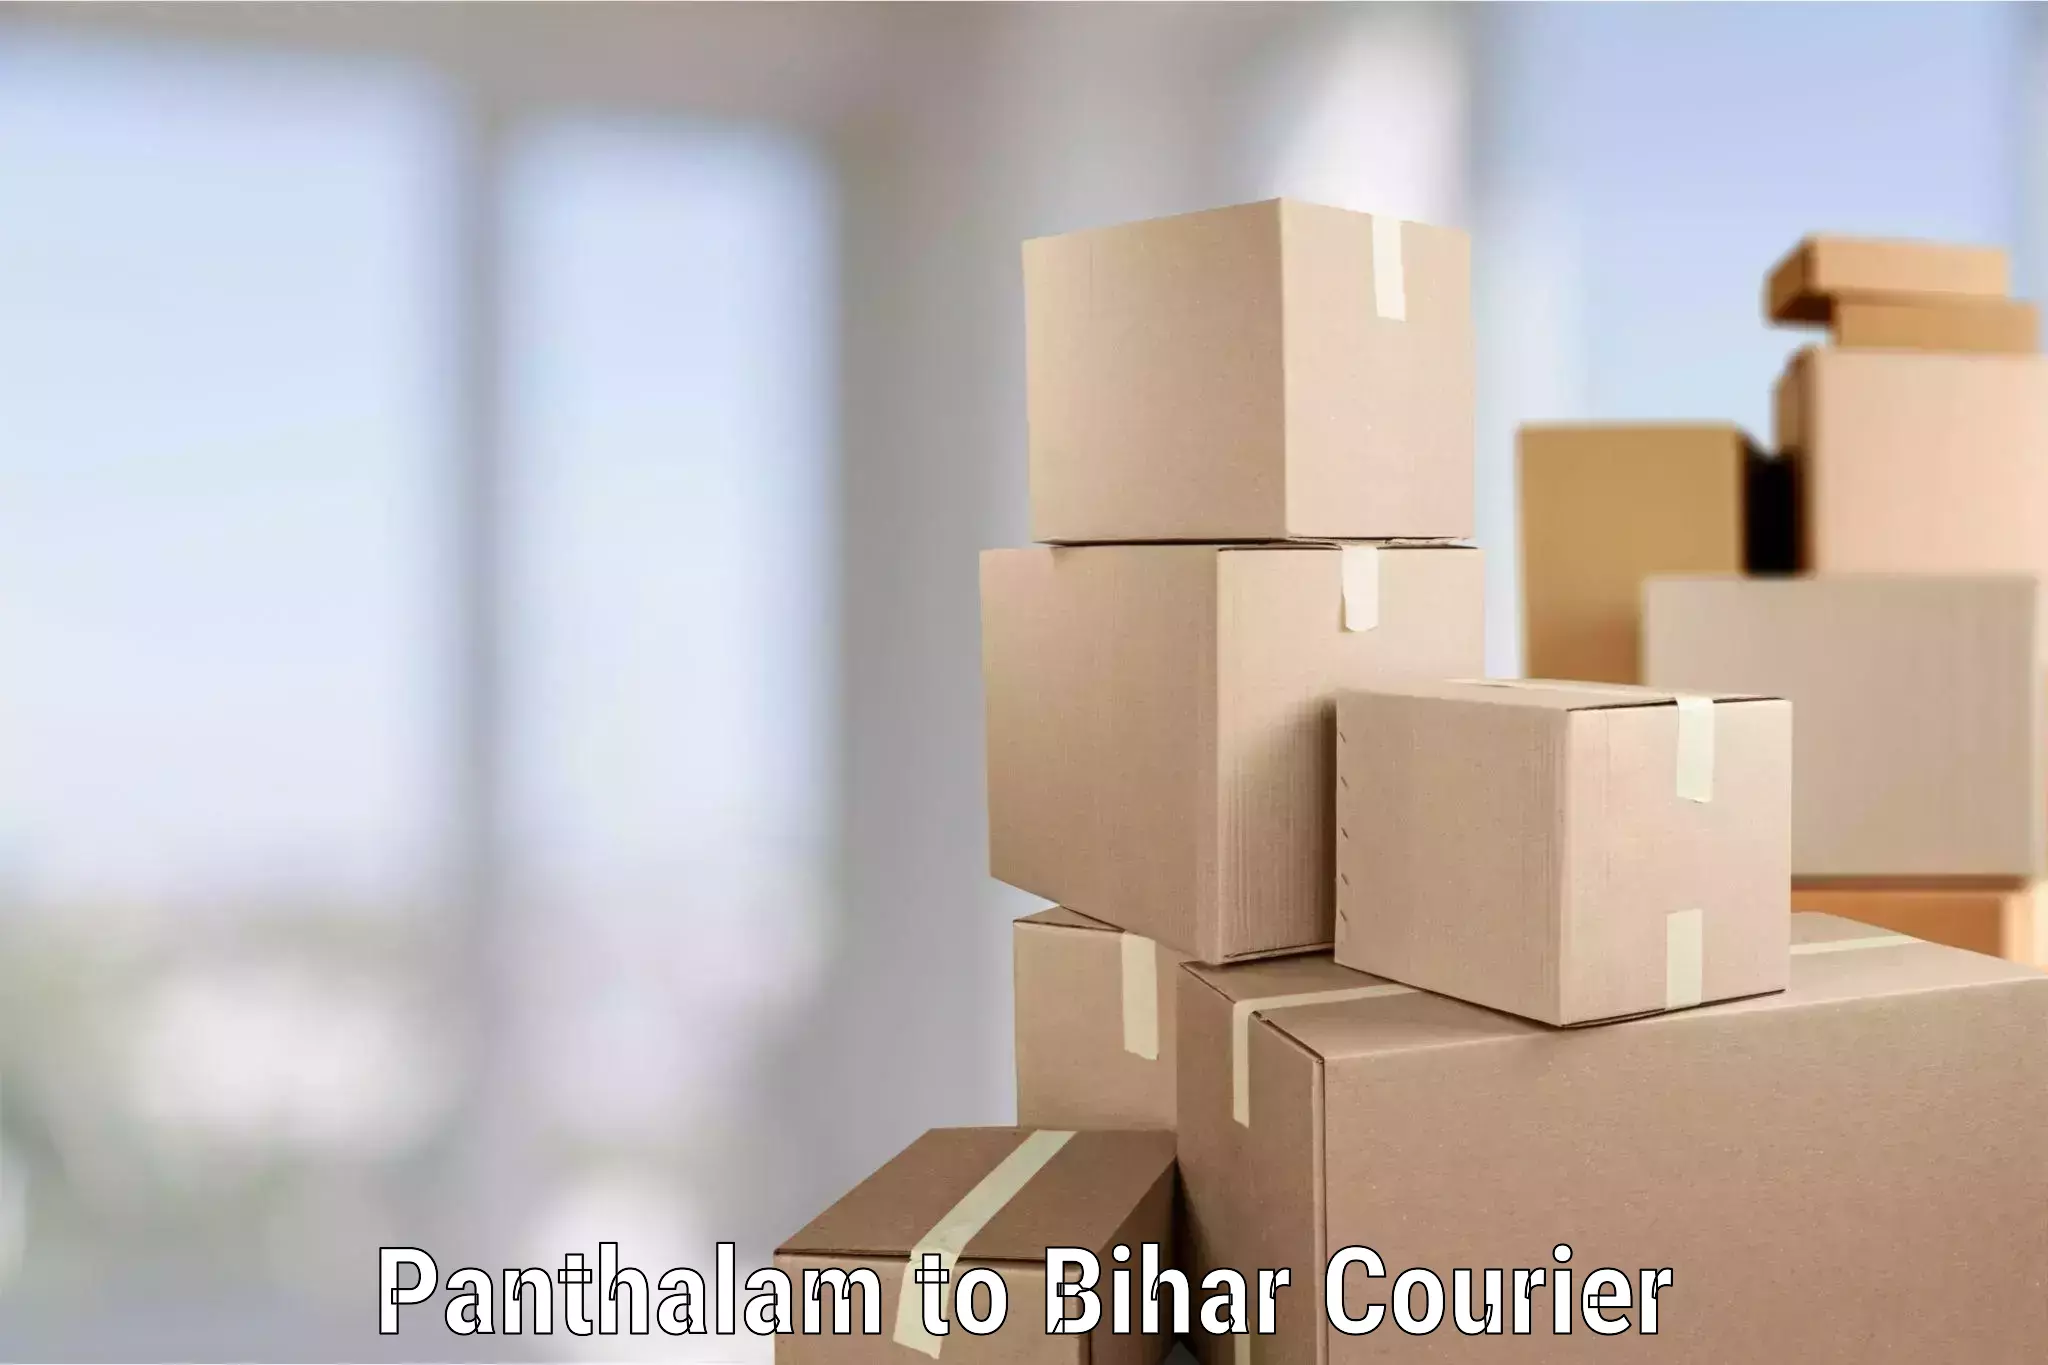 Nationwide furniture transport Panthalam to Aurai